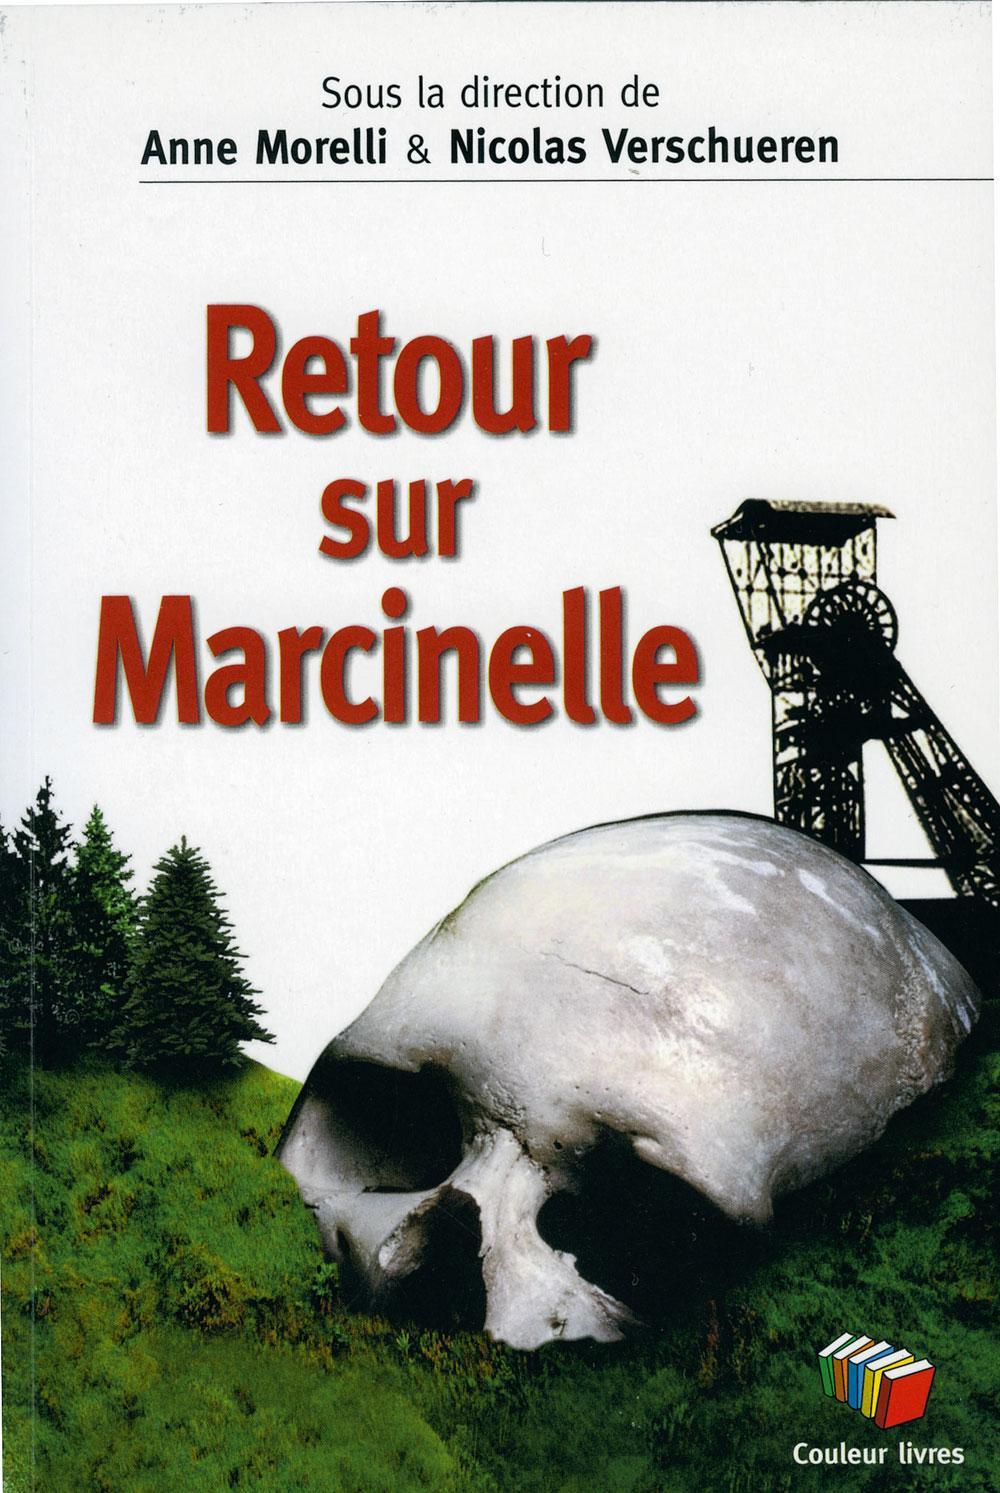 Retour sur Marcinelle, sous la direction d'Anne Morelli et Nicolas Verschueren, éd. Couleur livres, 200 p.